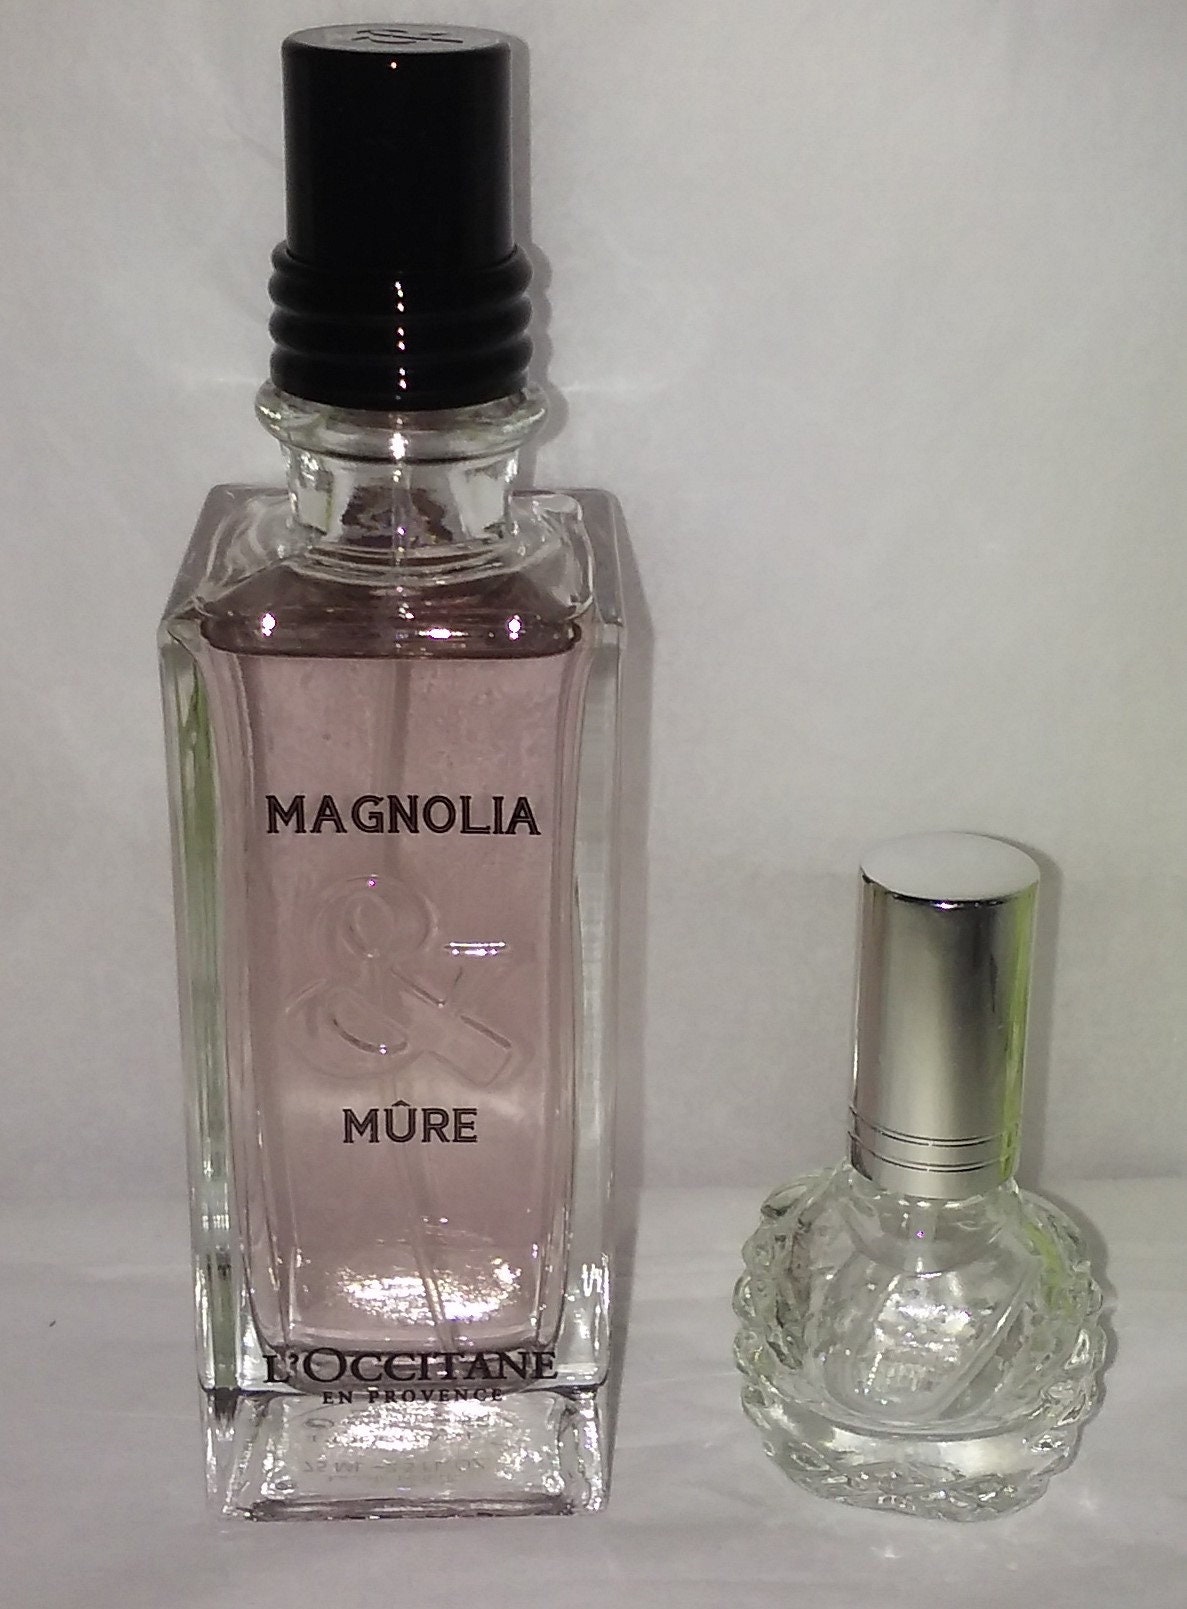 L'occitane Magnolia Mure Großes Parfum Steht Nicht Zum Verkauf von Etsy - belfontantiques